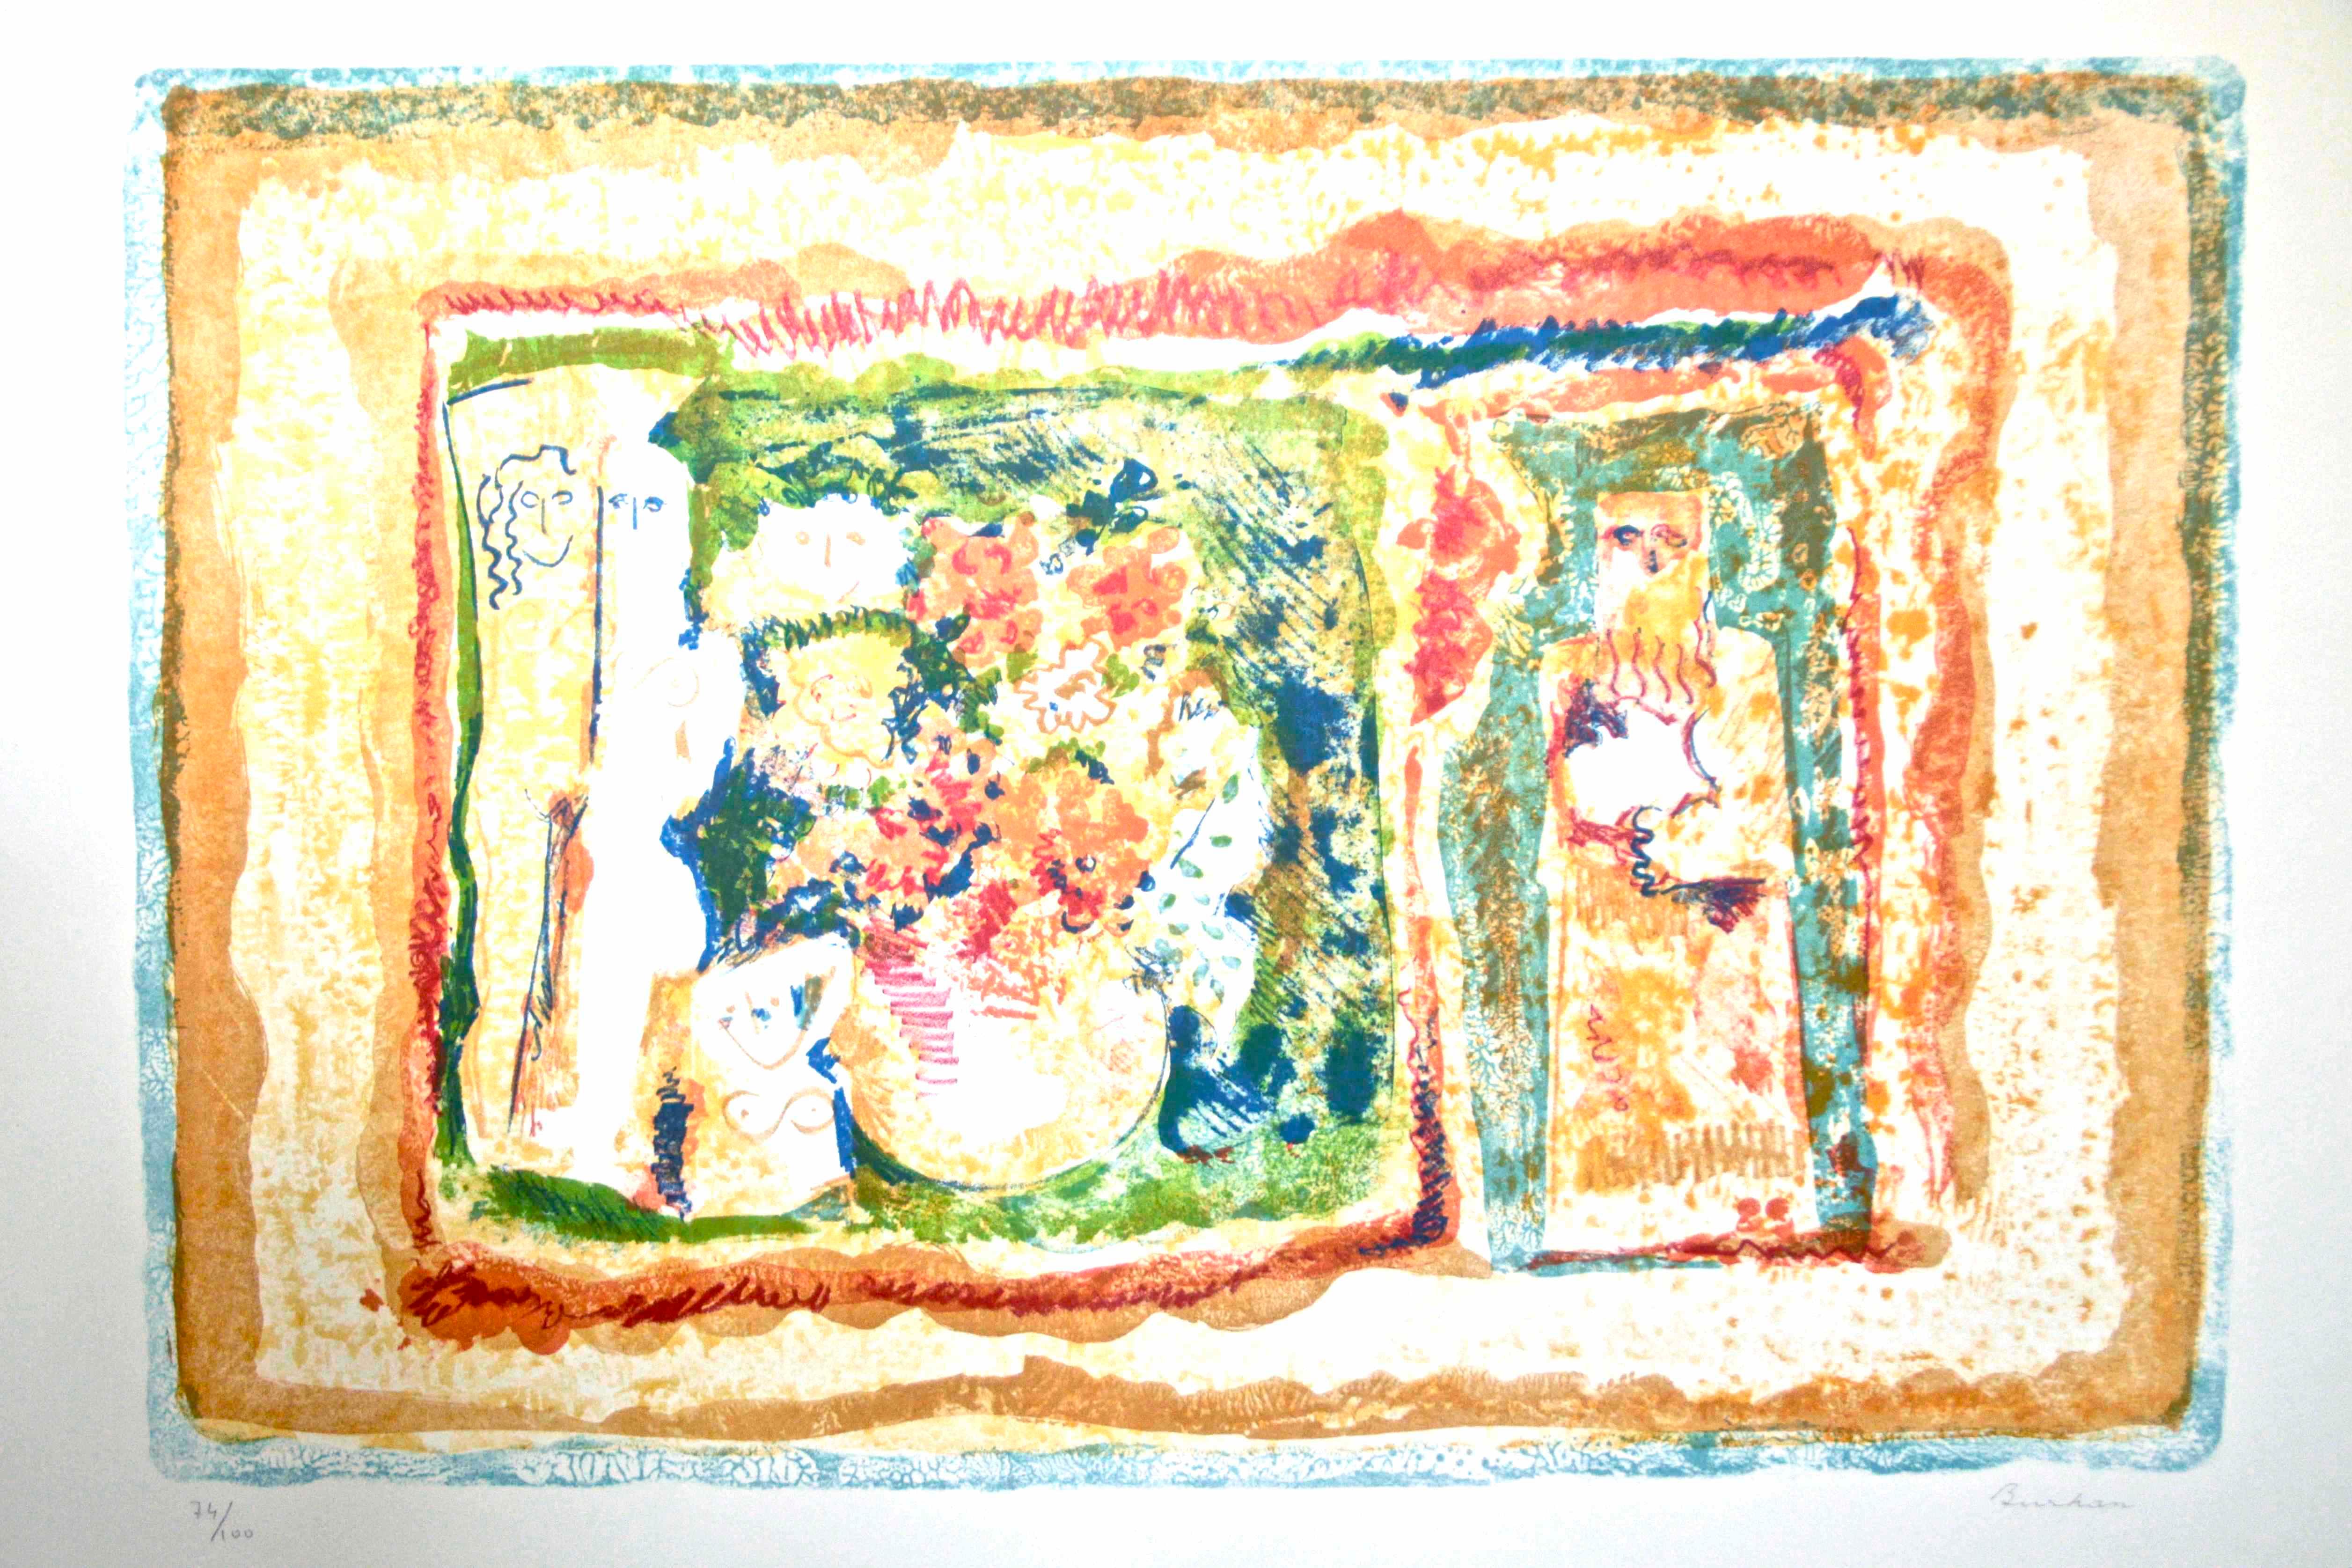  Fleurs et dieux nus - Litographe d'origine de Sami Burhan - 1970